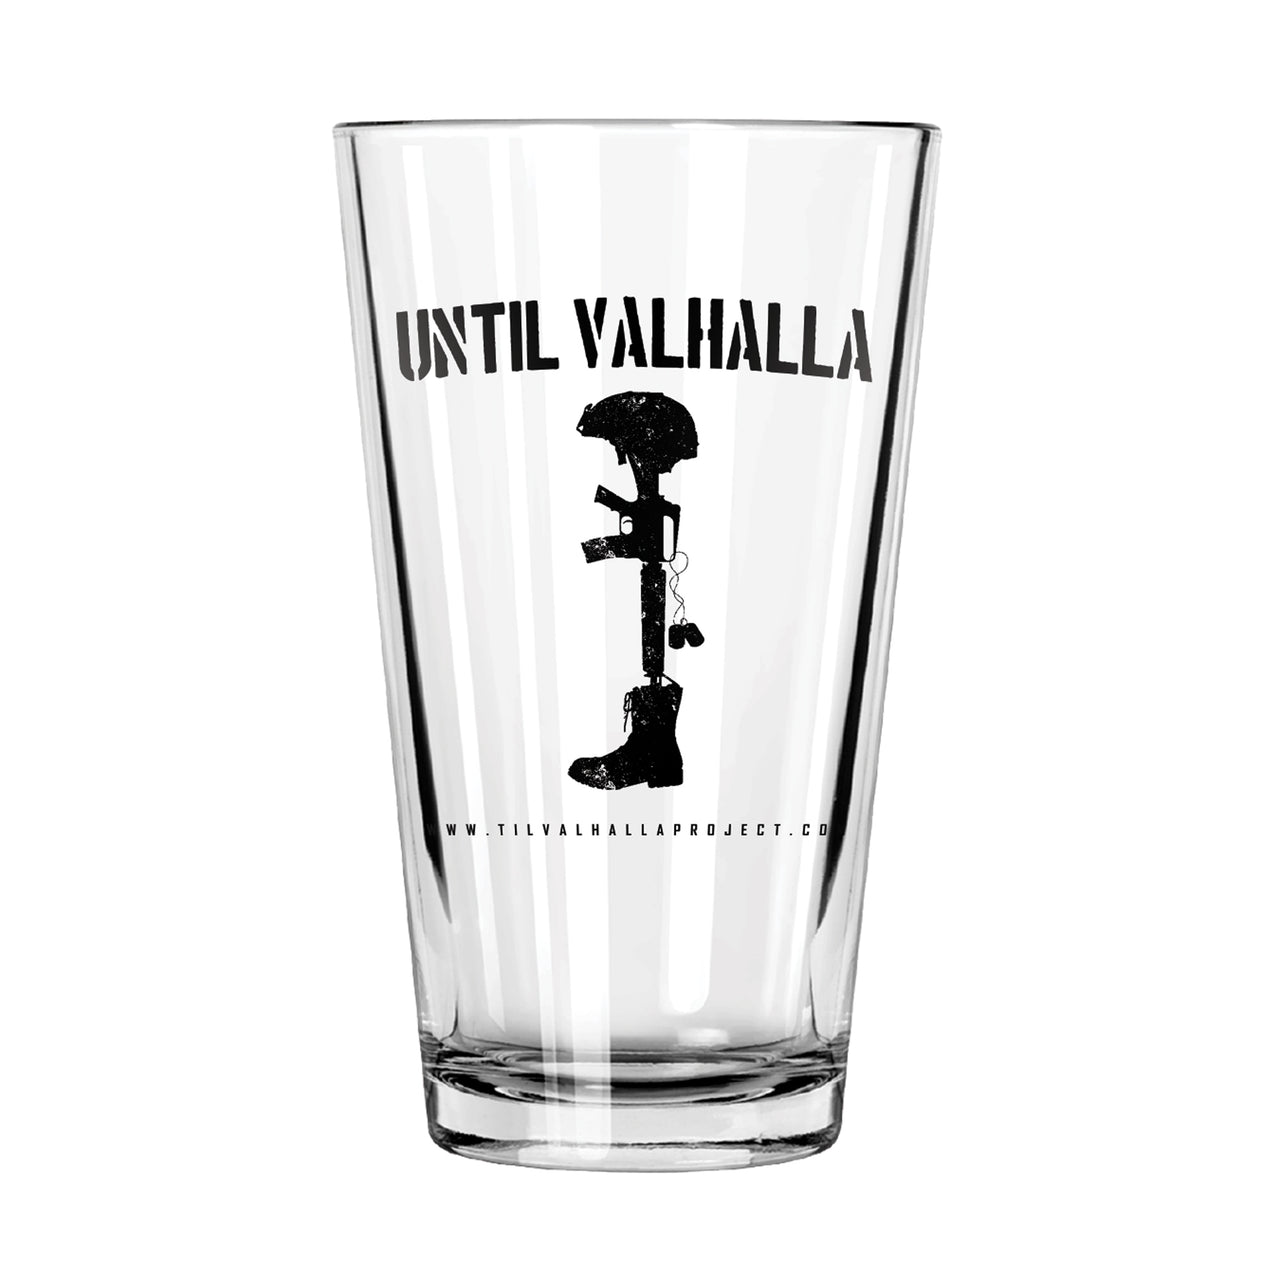 Until Valhalla - Glassware